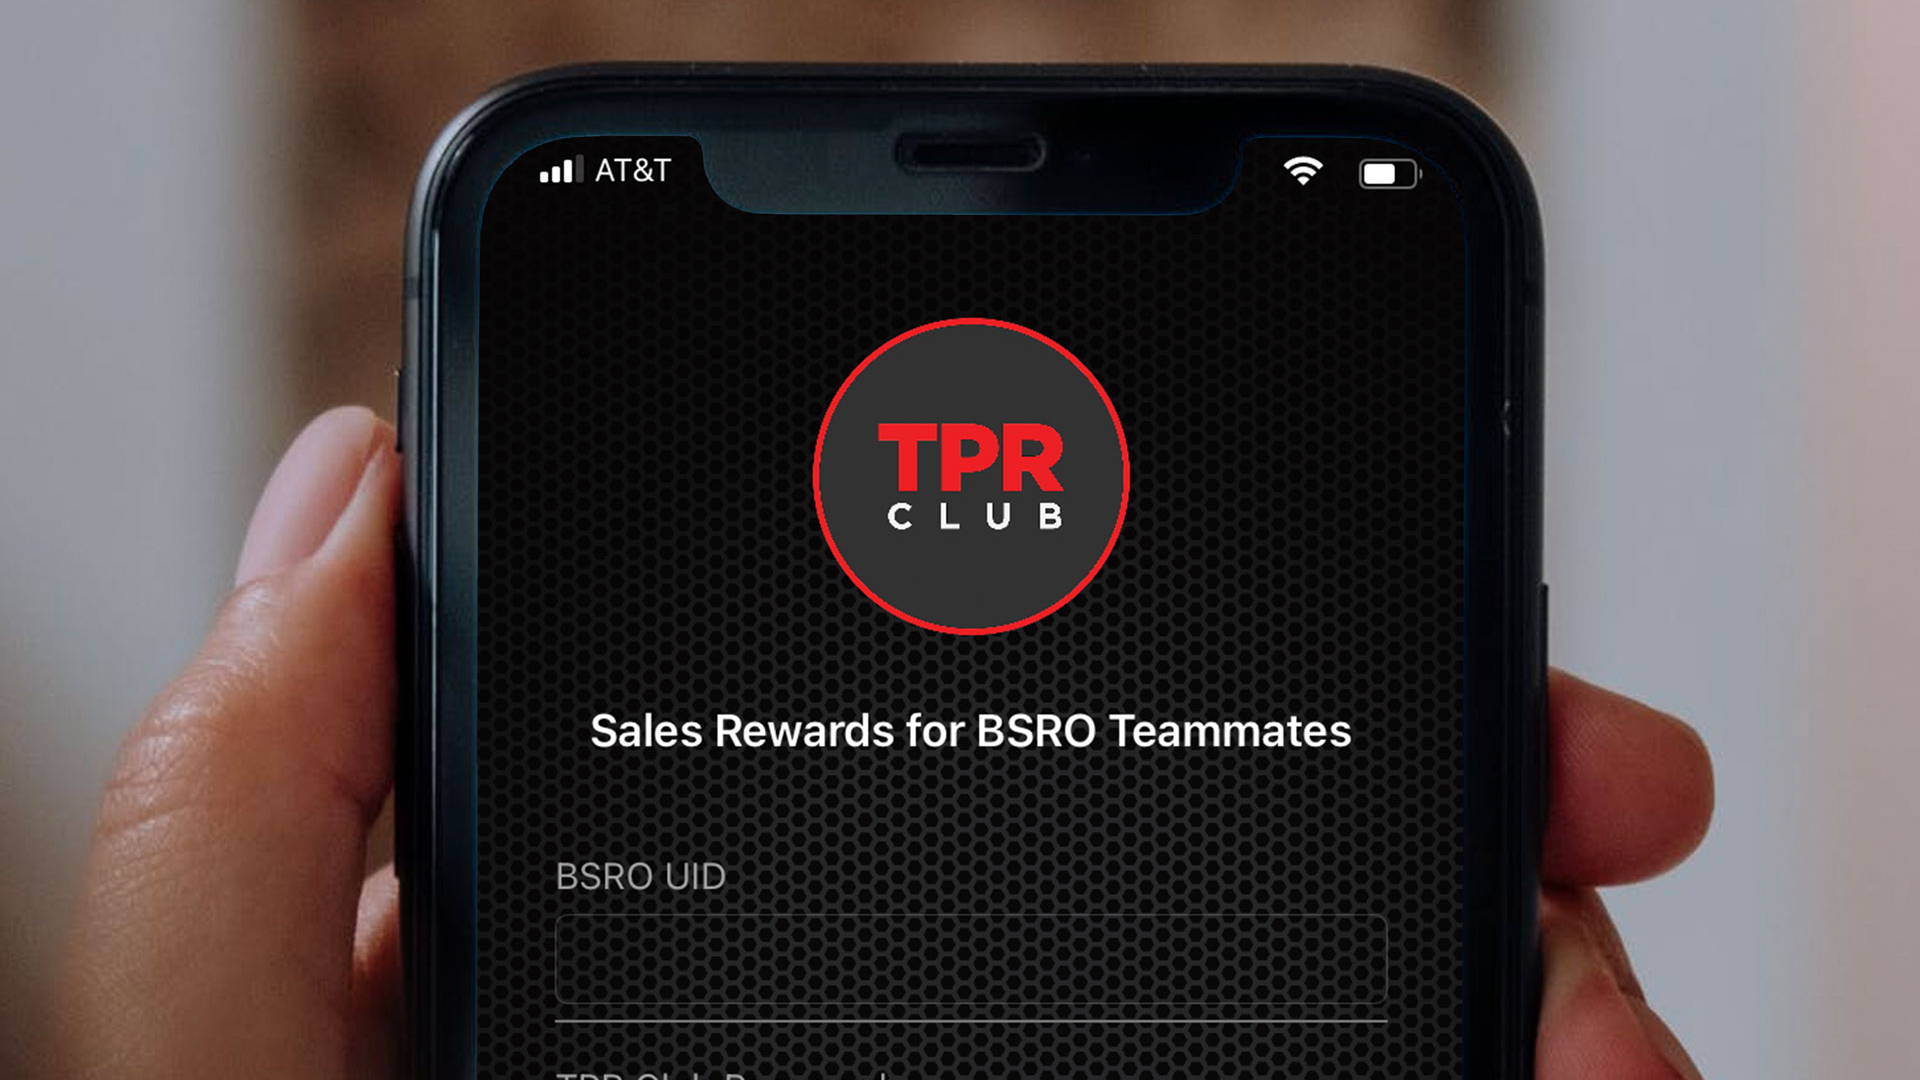 TPR Club App